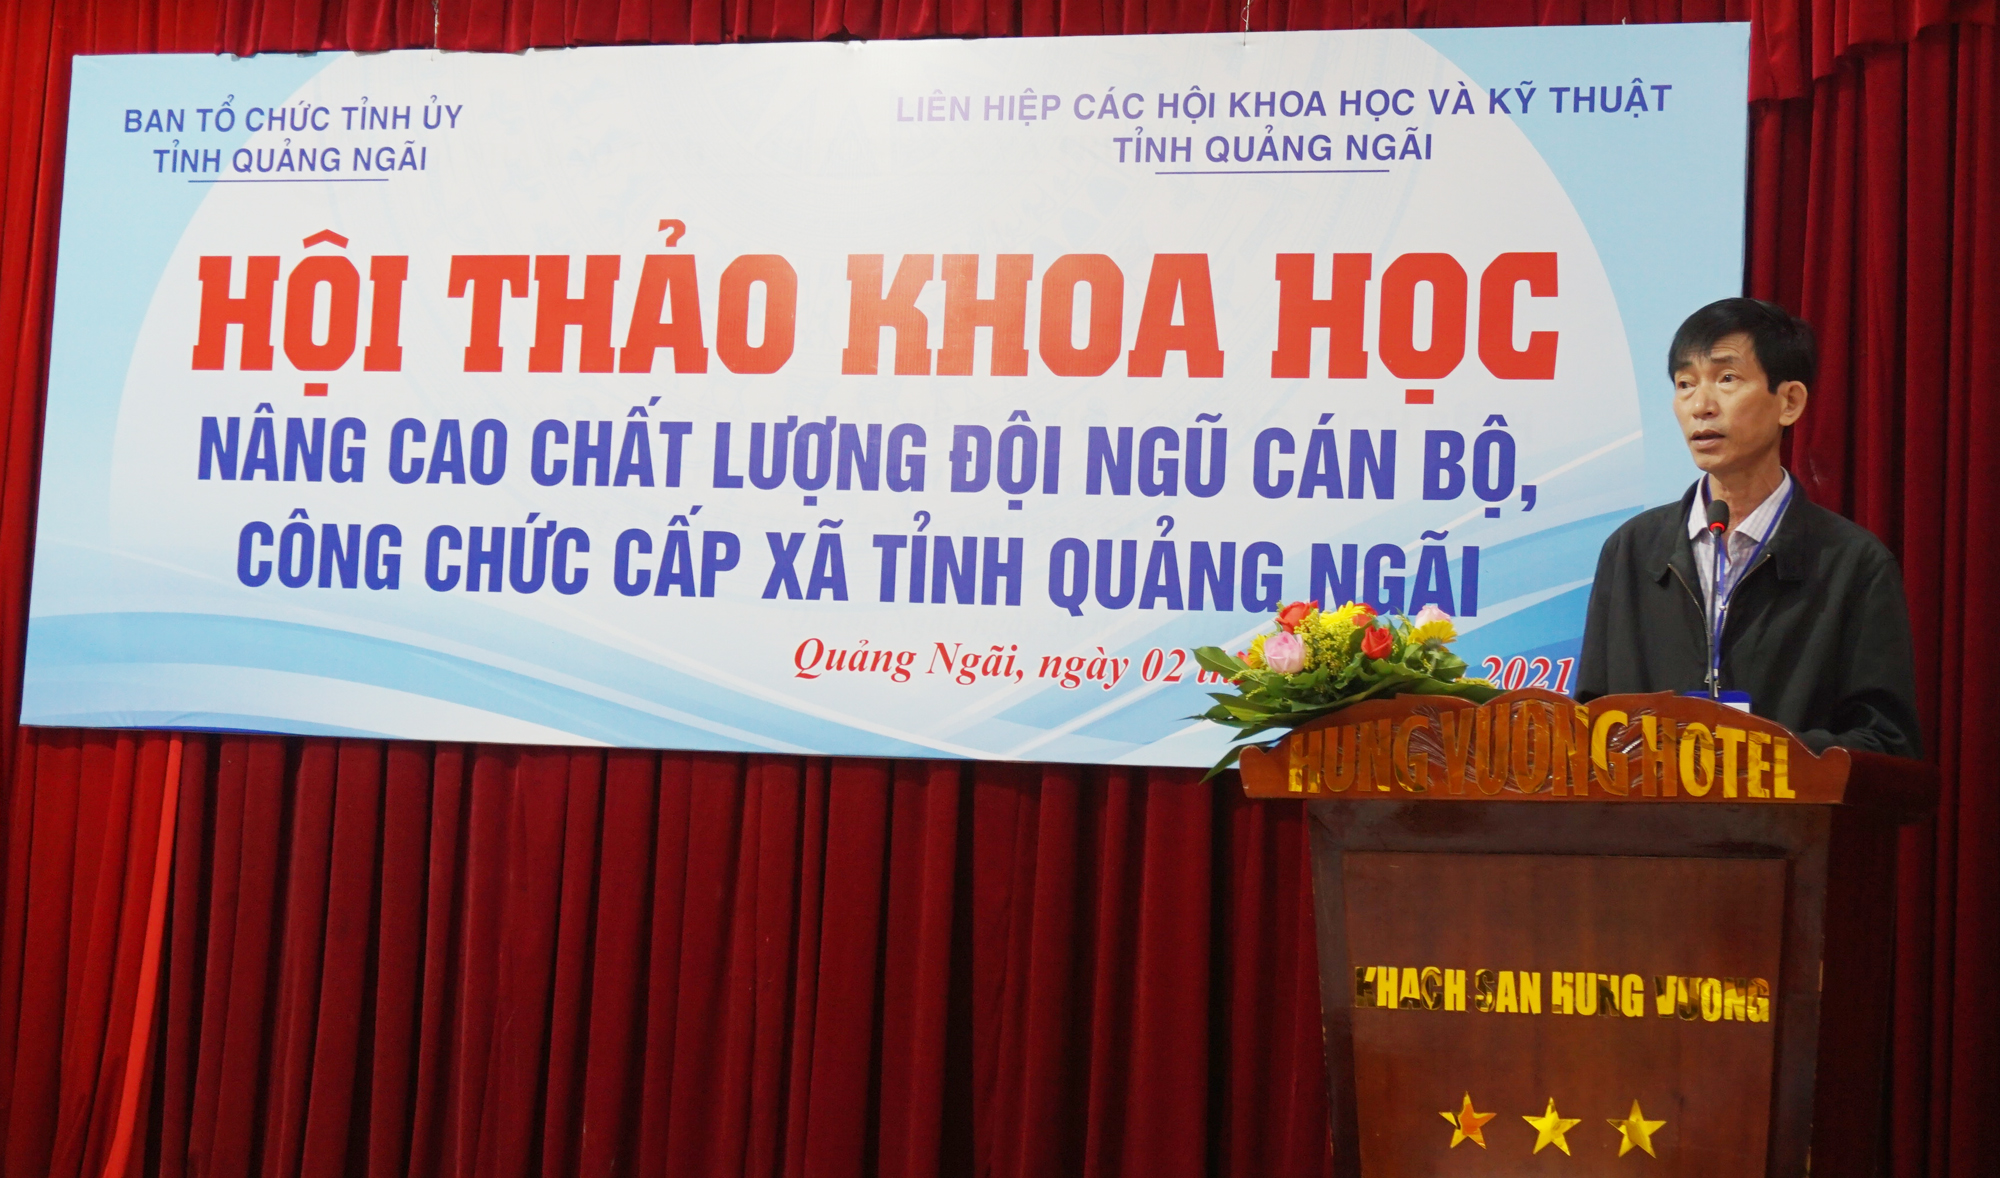 Hội thảo khoa học “Nâng cao chất lượng đội ngũ cán bộ, công chức cấp xã tỉnh Quảng Ngãi”